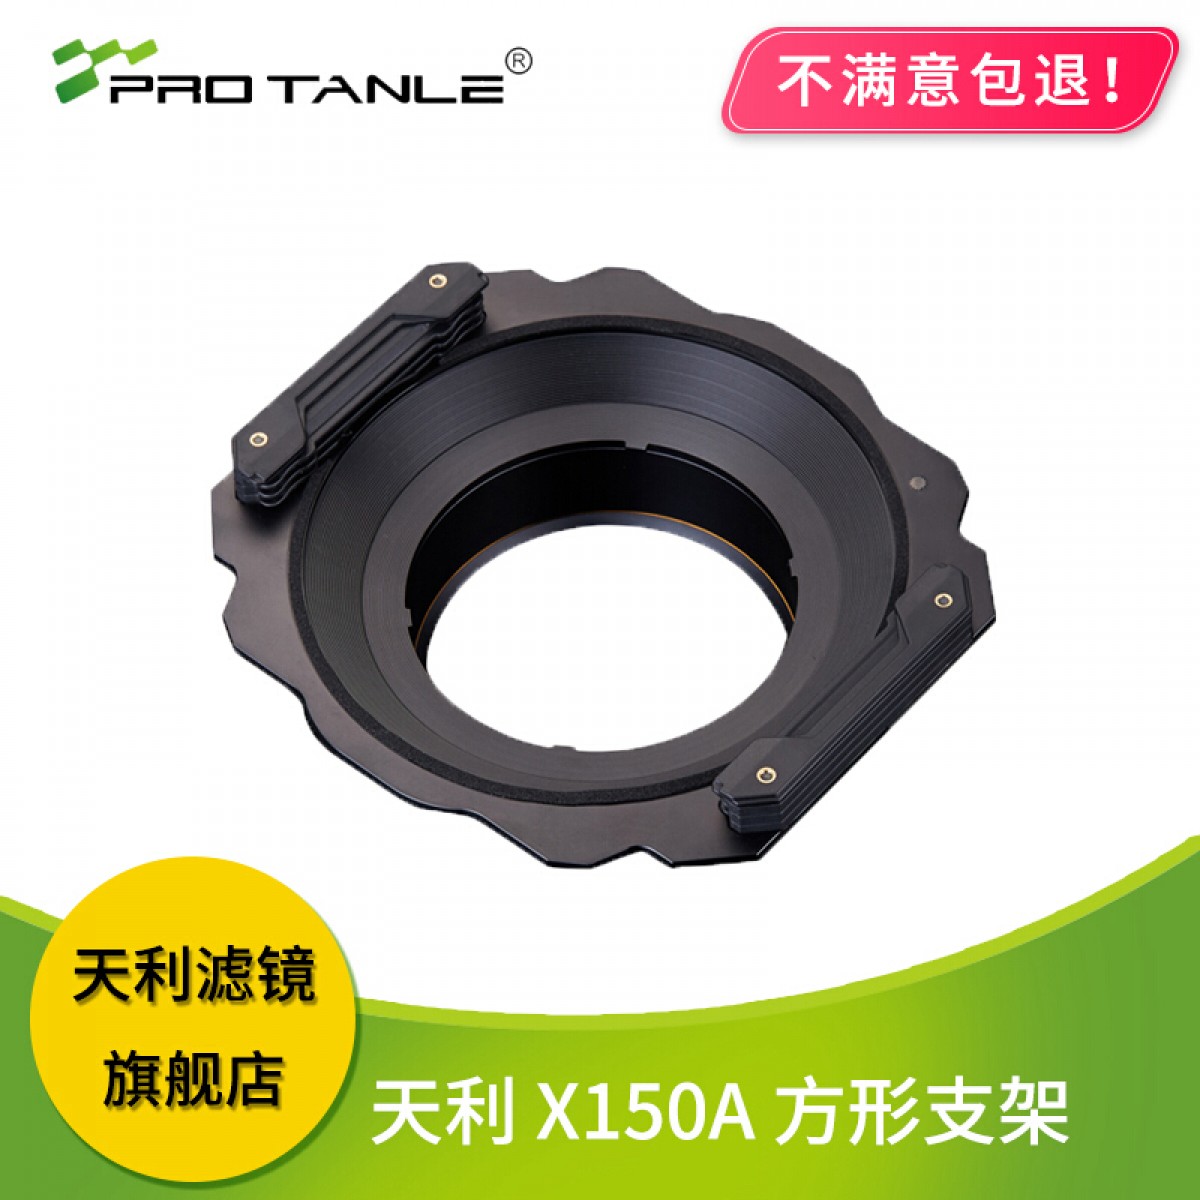 天利PRO TANLE X150A方镜方形镜片滤镜支架可装150mm滤镜风光支架 适合尼康14-24